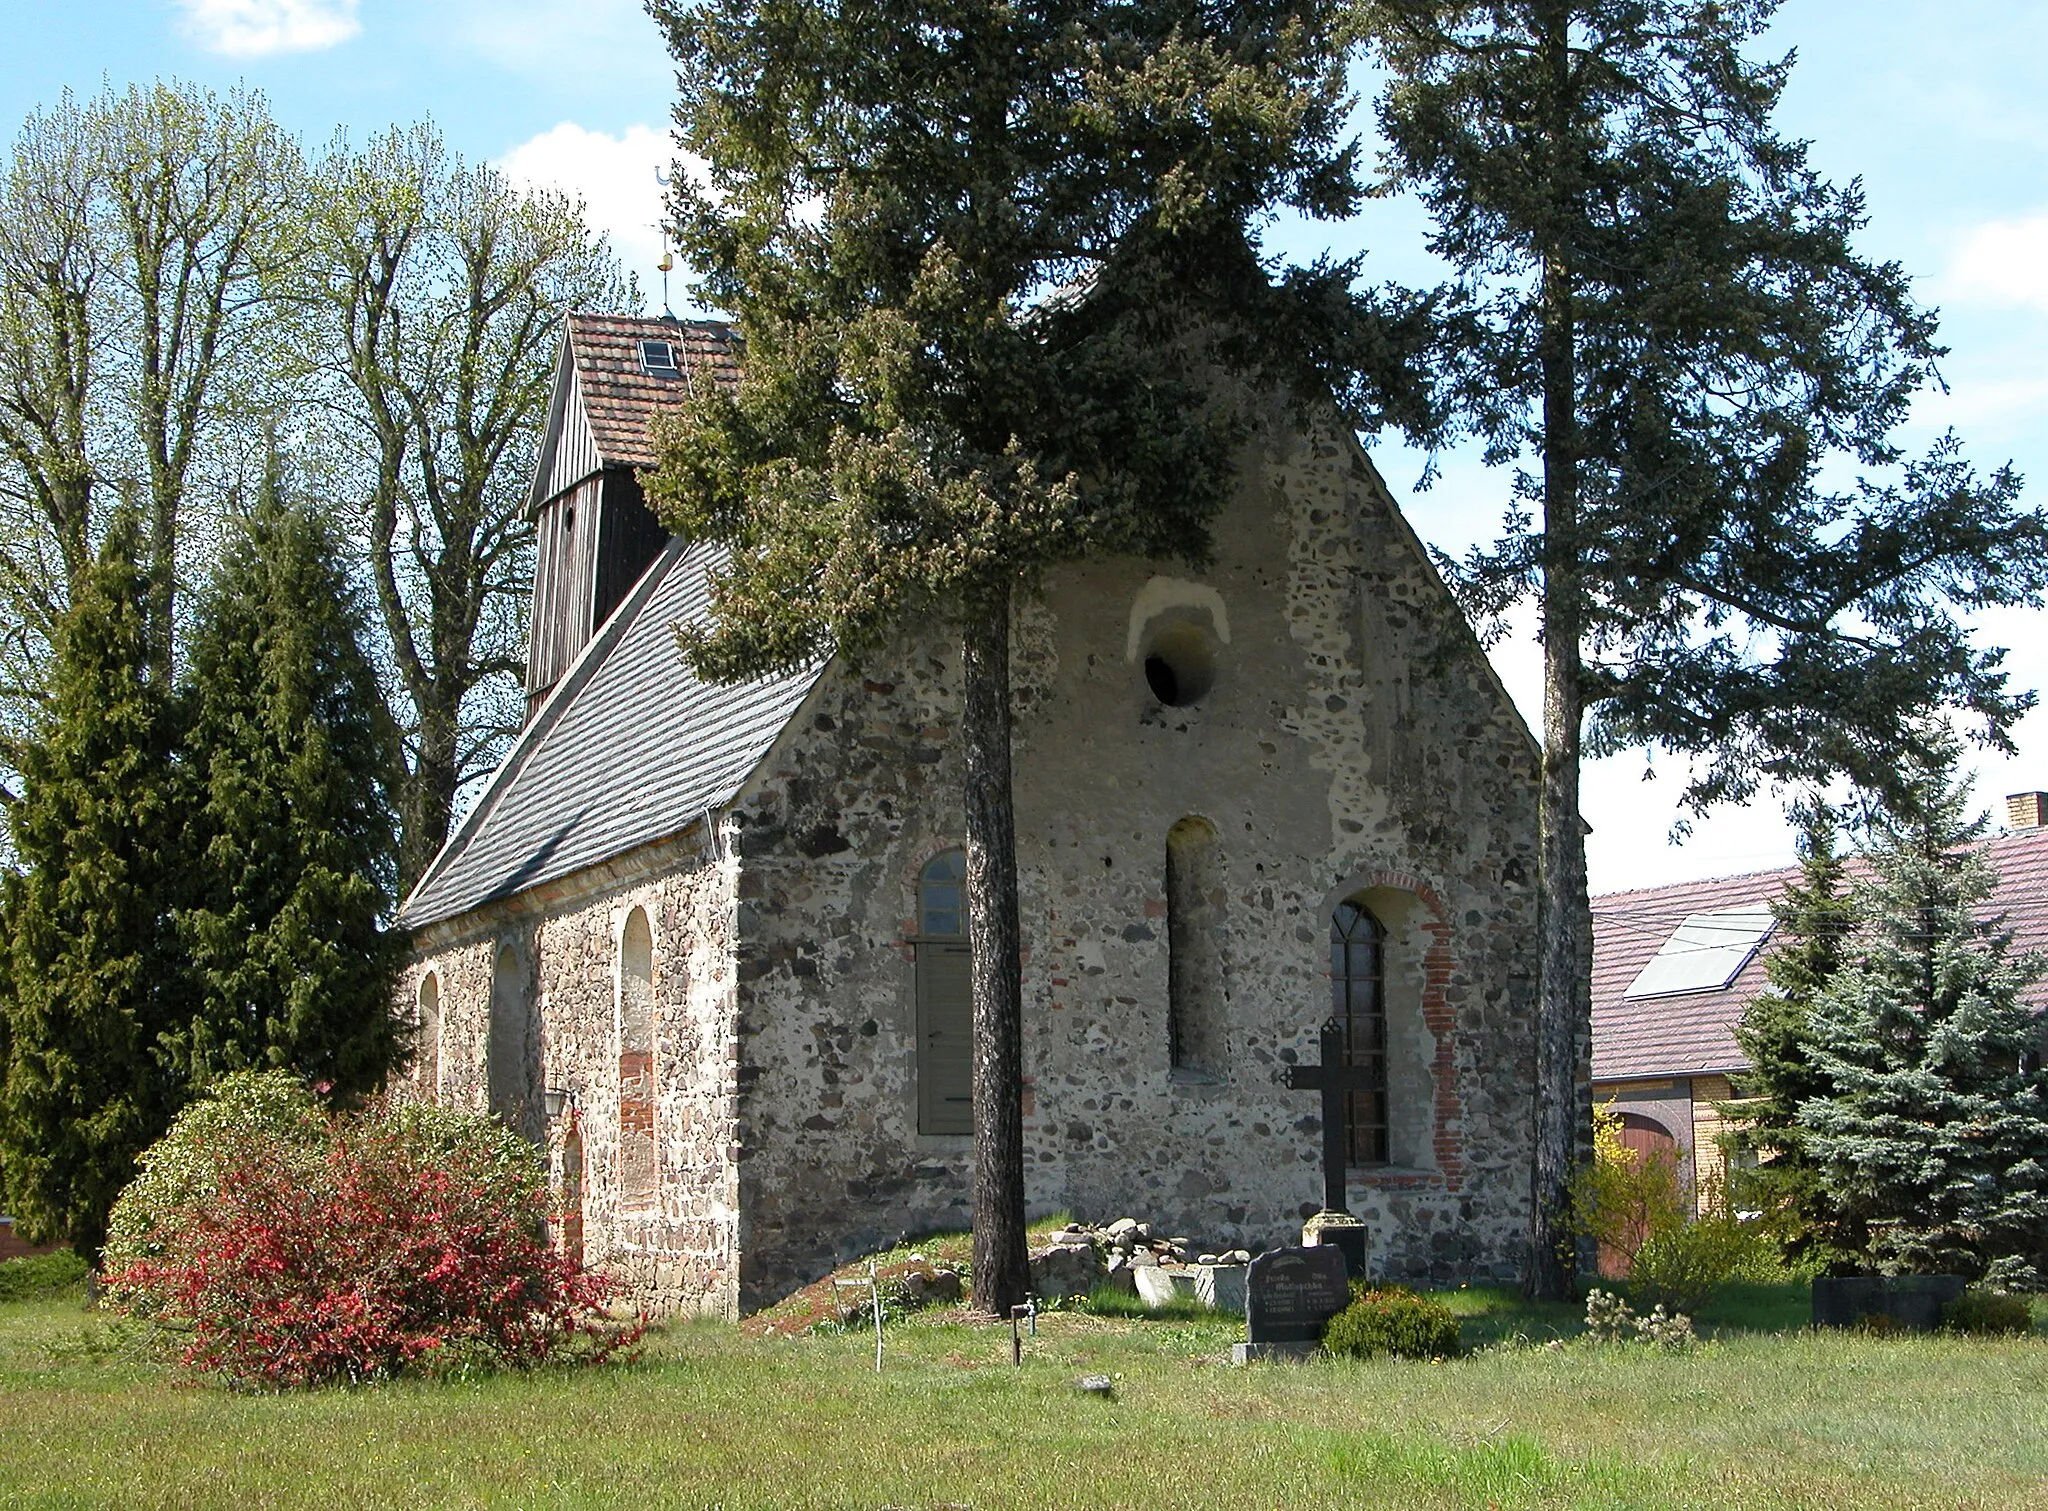 Photo showing: 29.04.2015    03246  Gahro (Crinitz): Dorfkirche St. Johannes (GMP: 51.738366,13.724868). Die evangelische Kirche wurde im 14. Jahrhundert aus Feldsteinen errichtet. Der Saalbau verfügt im Westen über einen hölzernen Glockenturm aus dem 18. Jahrhundert, der im 19. Jahrhundert erneuert wurde.                      [DSCN5057.JPG]20150429205DR.JPG(c)Blobelt